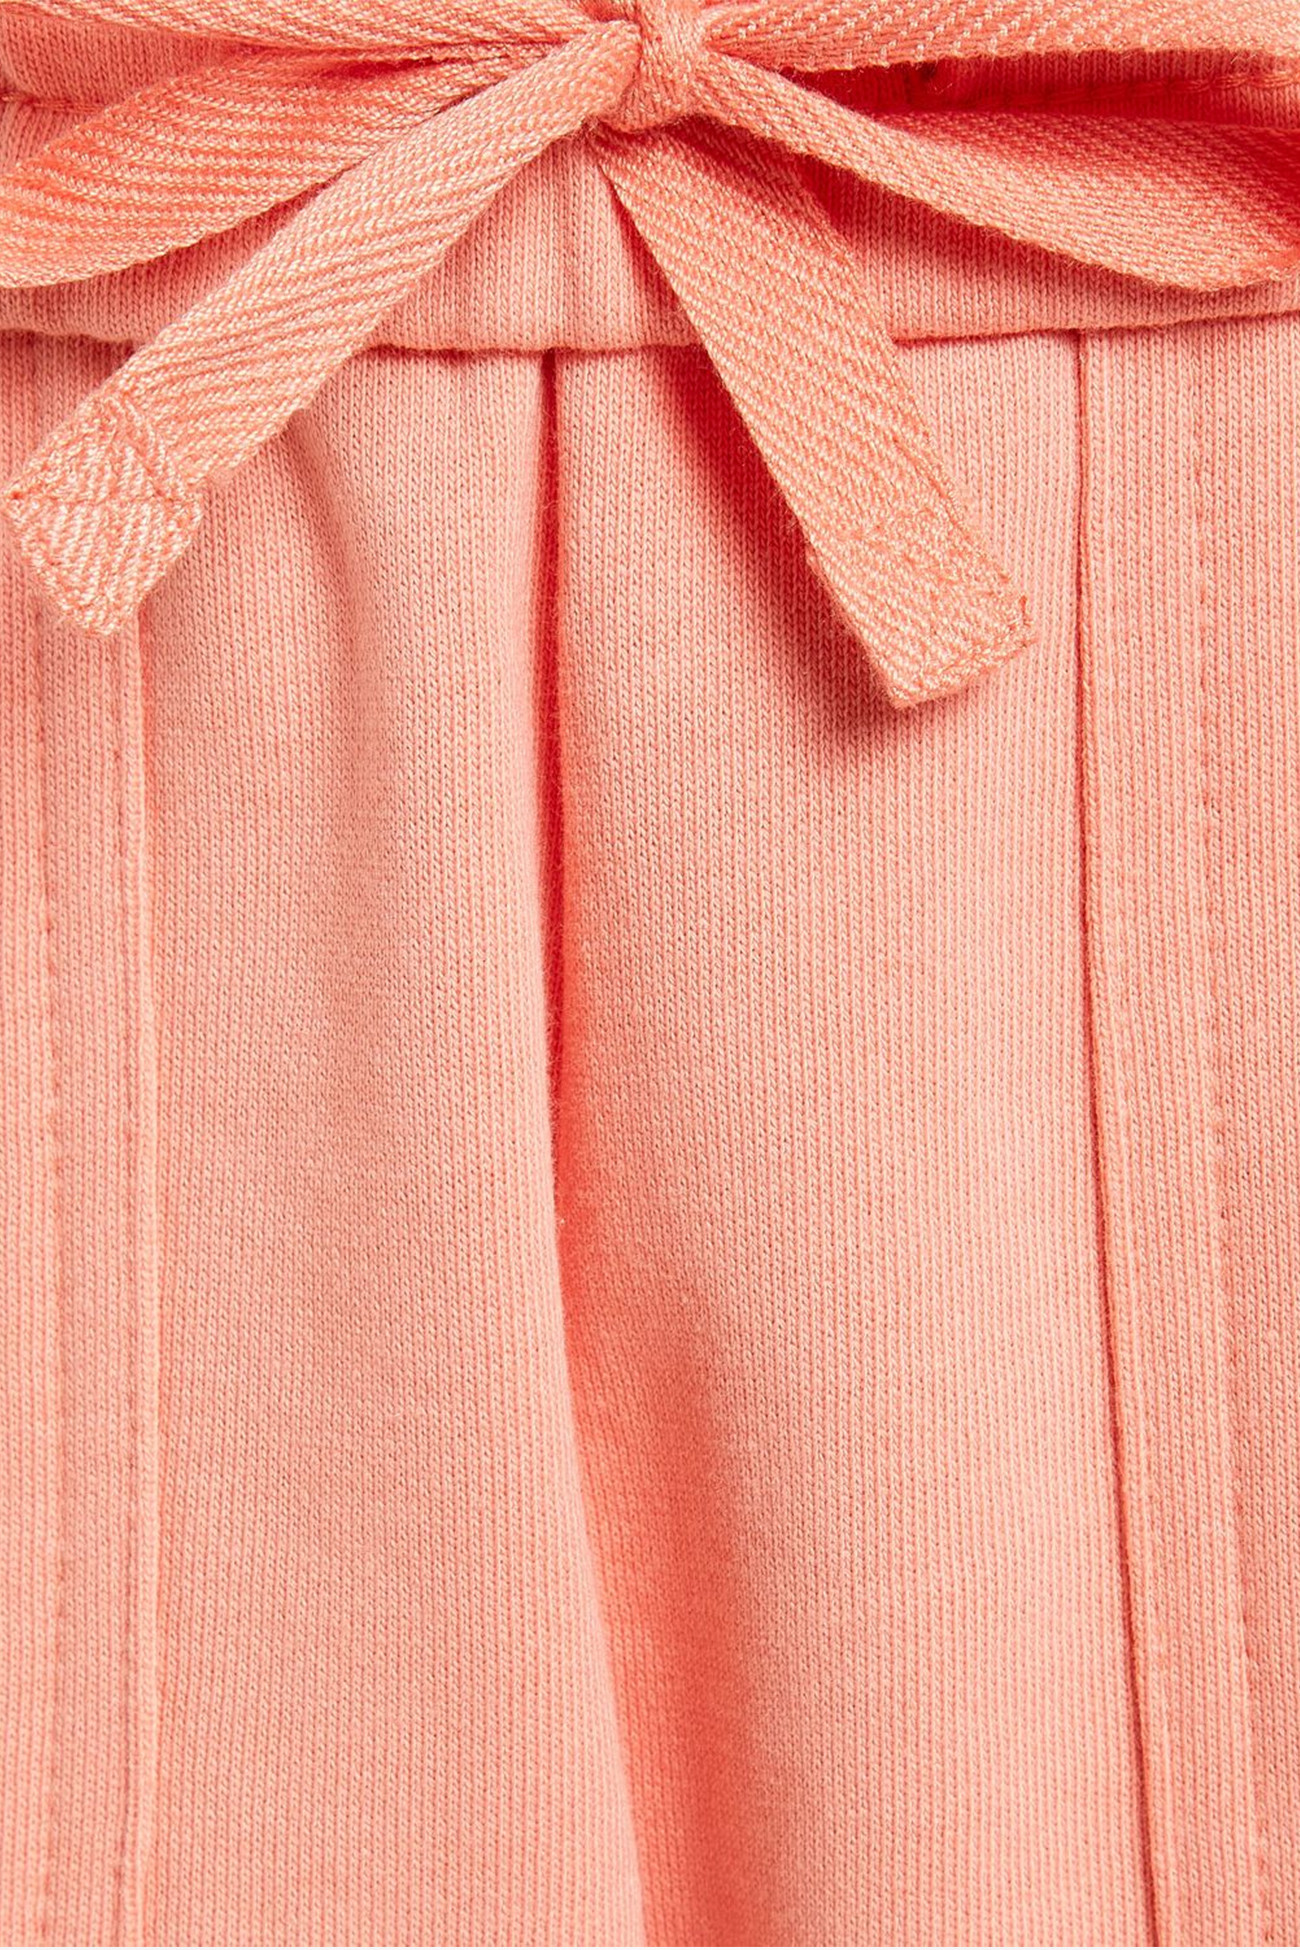 Брюки женские FILA Pants  Розовый 113354-50 изображение 3